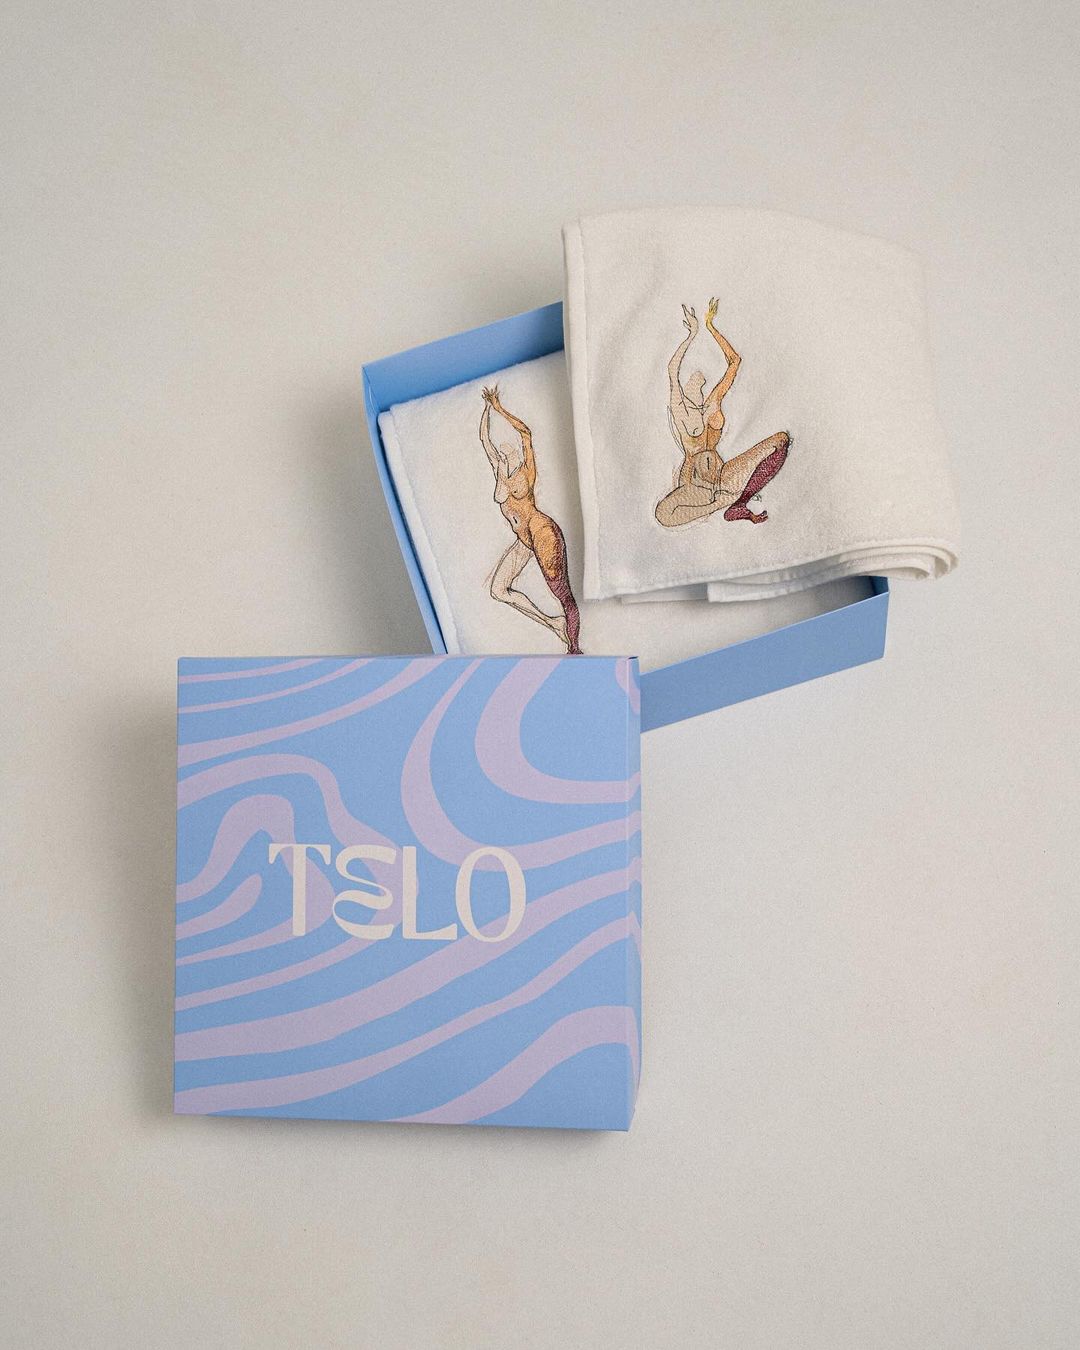 Как создаются эстетичные полотенца в коллаборации с художниками: история бренда Telo (фото 12)